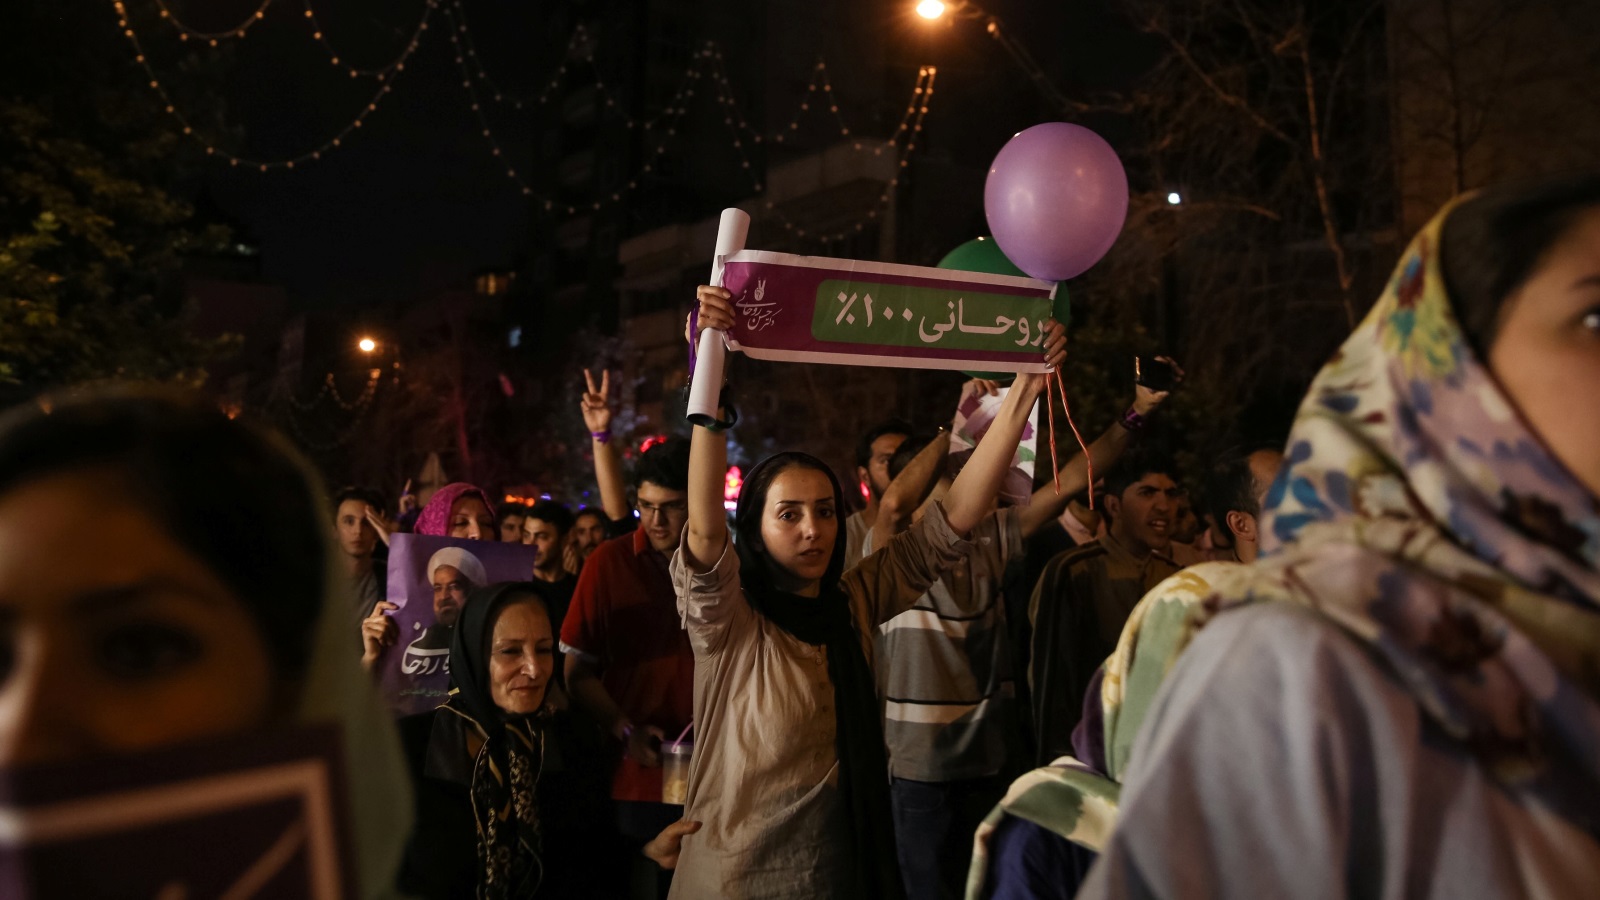 السؤال المطروح الآن هو: هل سيستخدم روحاني ولايته الثانية لإيجاد فرص جديدة والارتقاء بآمال المرأة الإيرانية؟